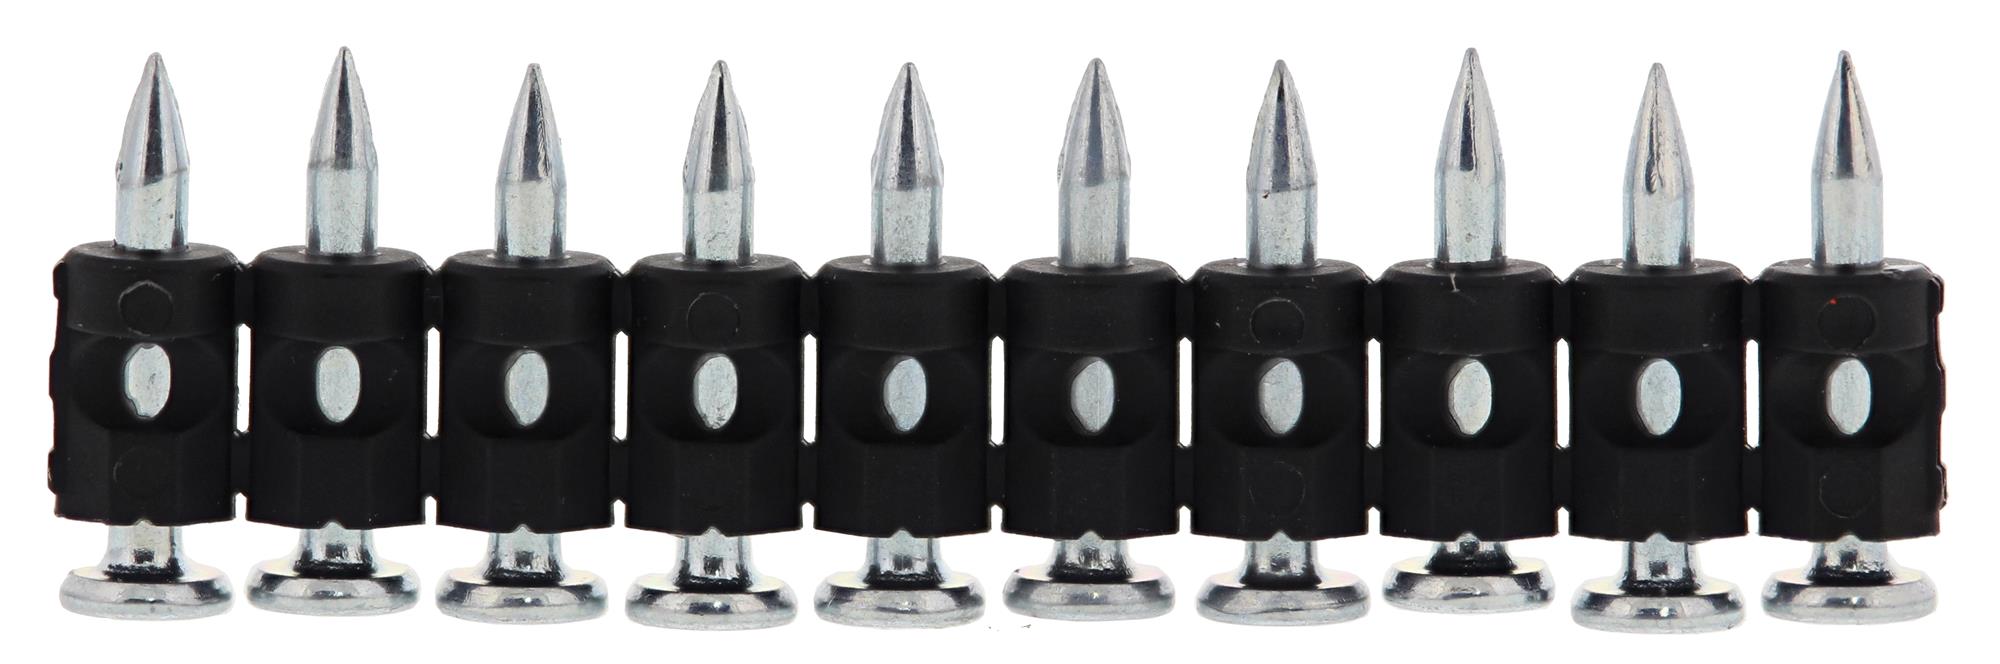 Hřebíky FeZn Spit C6 2,6×20 mm 500 ks